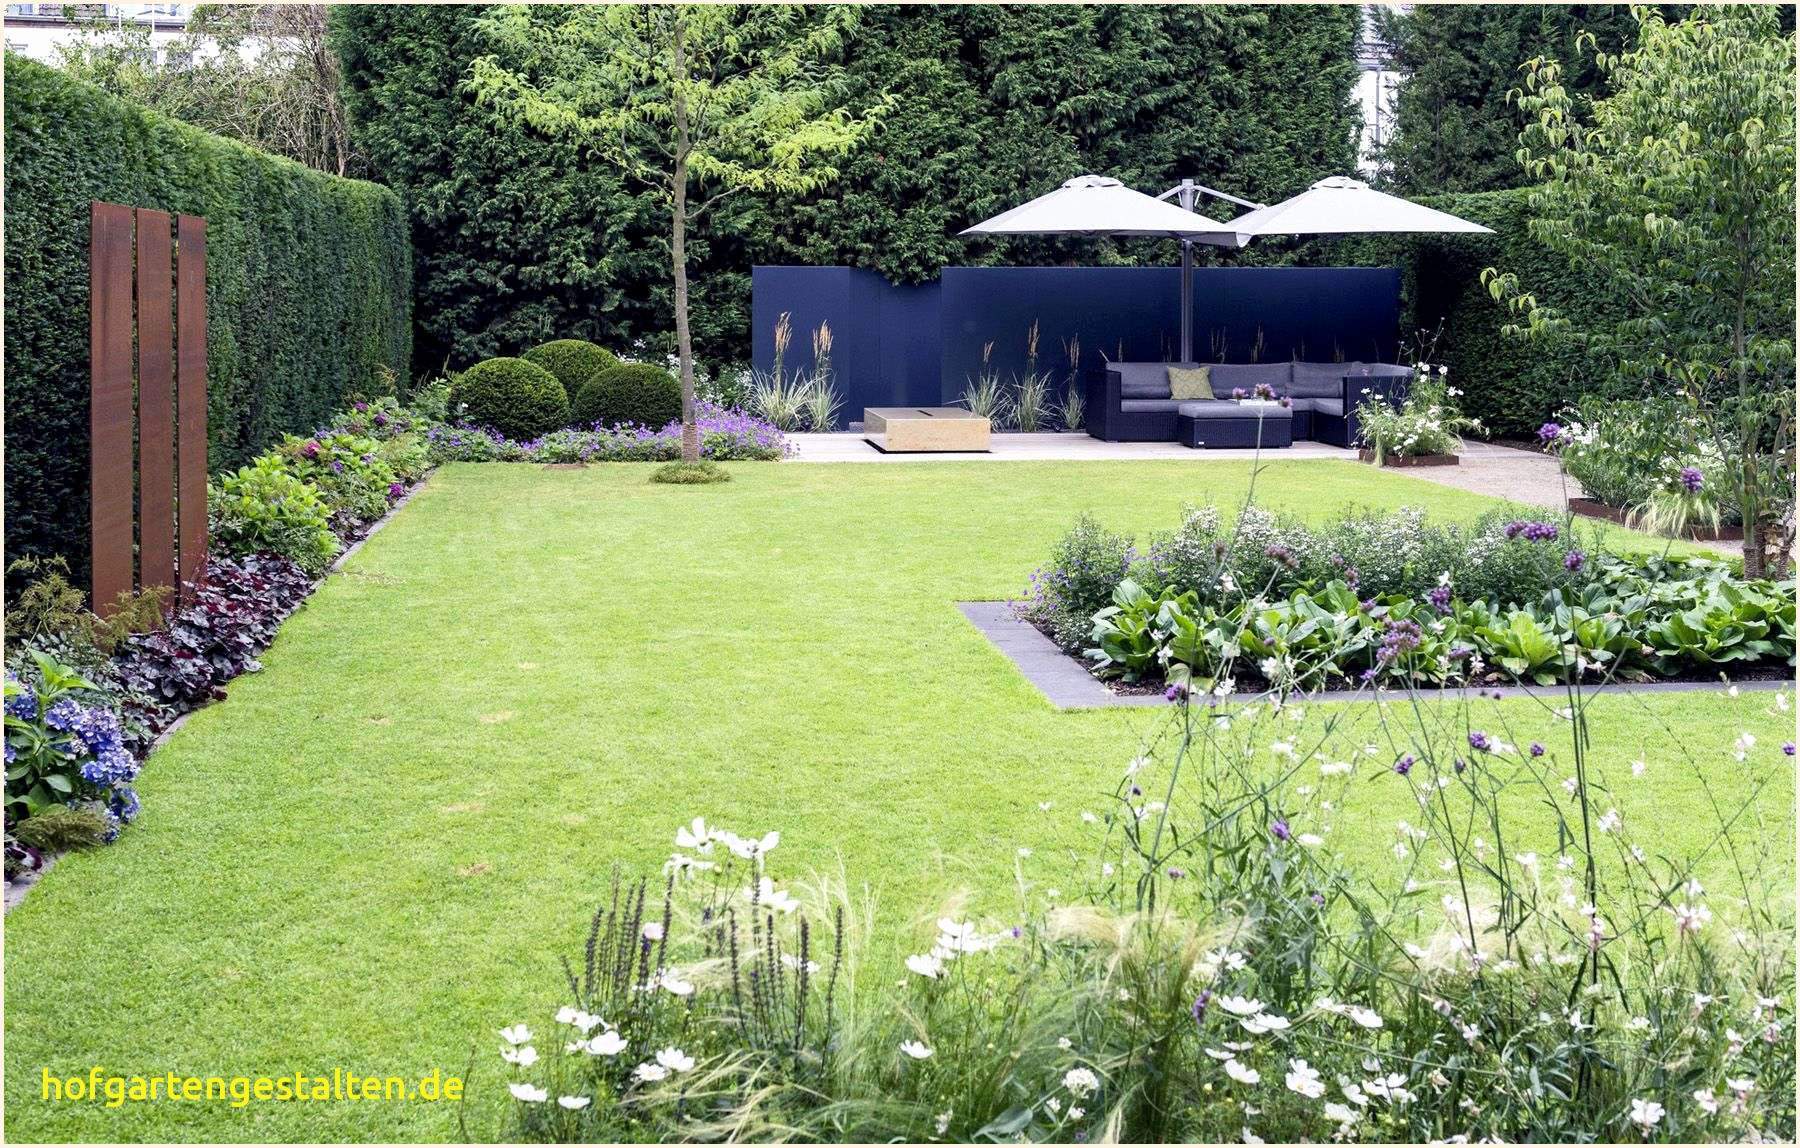 Hydroponischer Garten Elegant 36 Einzigartig Japanischer Garten Ideen Reizend